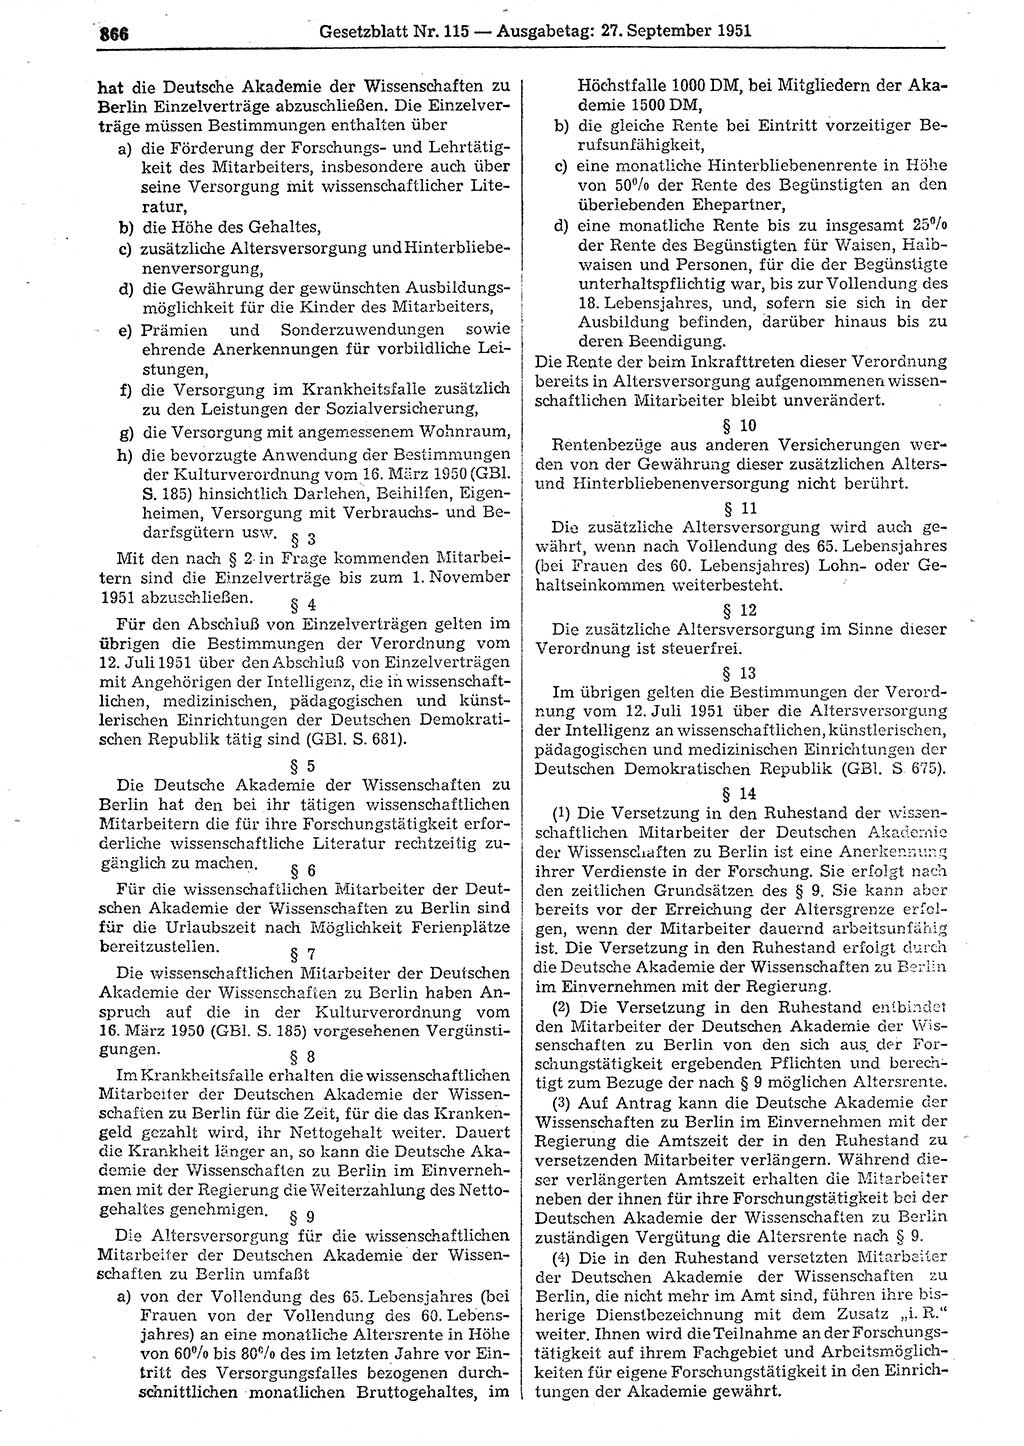 Gesetzblatt (GBl.) der Deutschen Demokratischen Republik (DDR) 1951, Seite 866 (GBl. DDR 1951, S. 866)